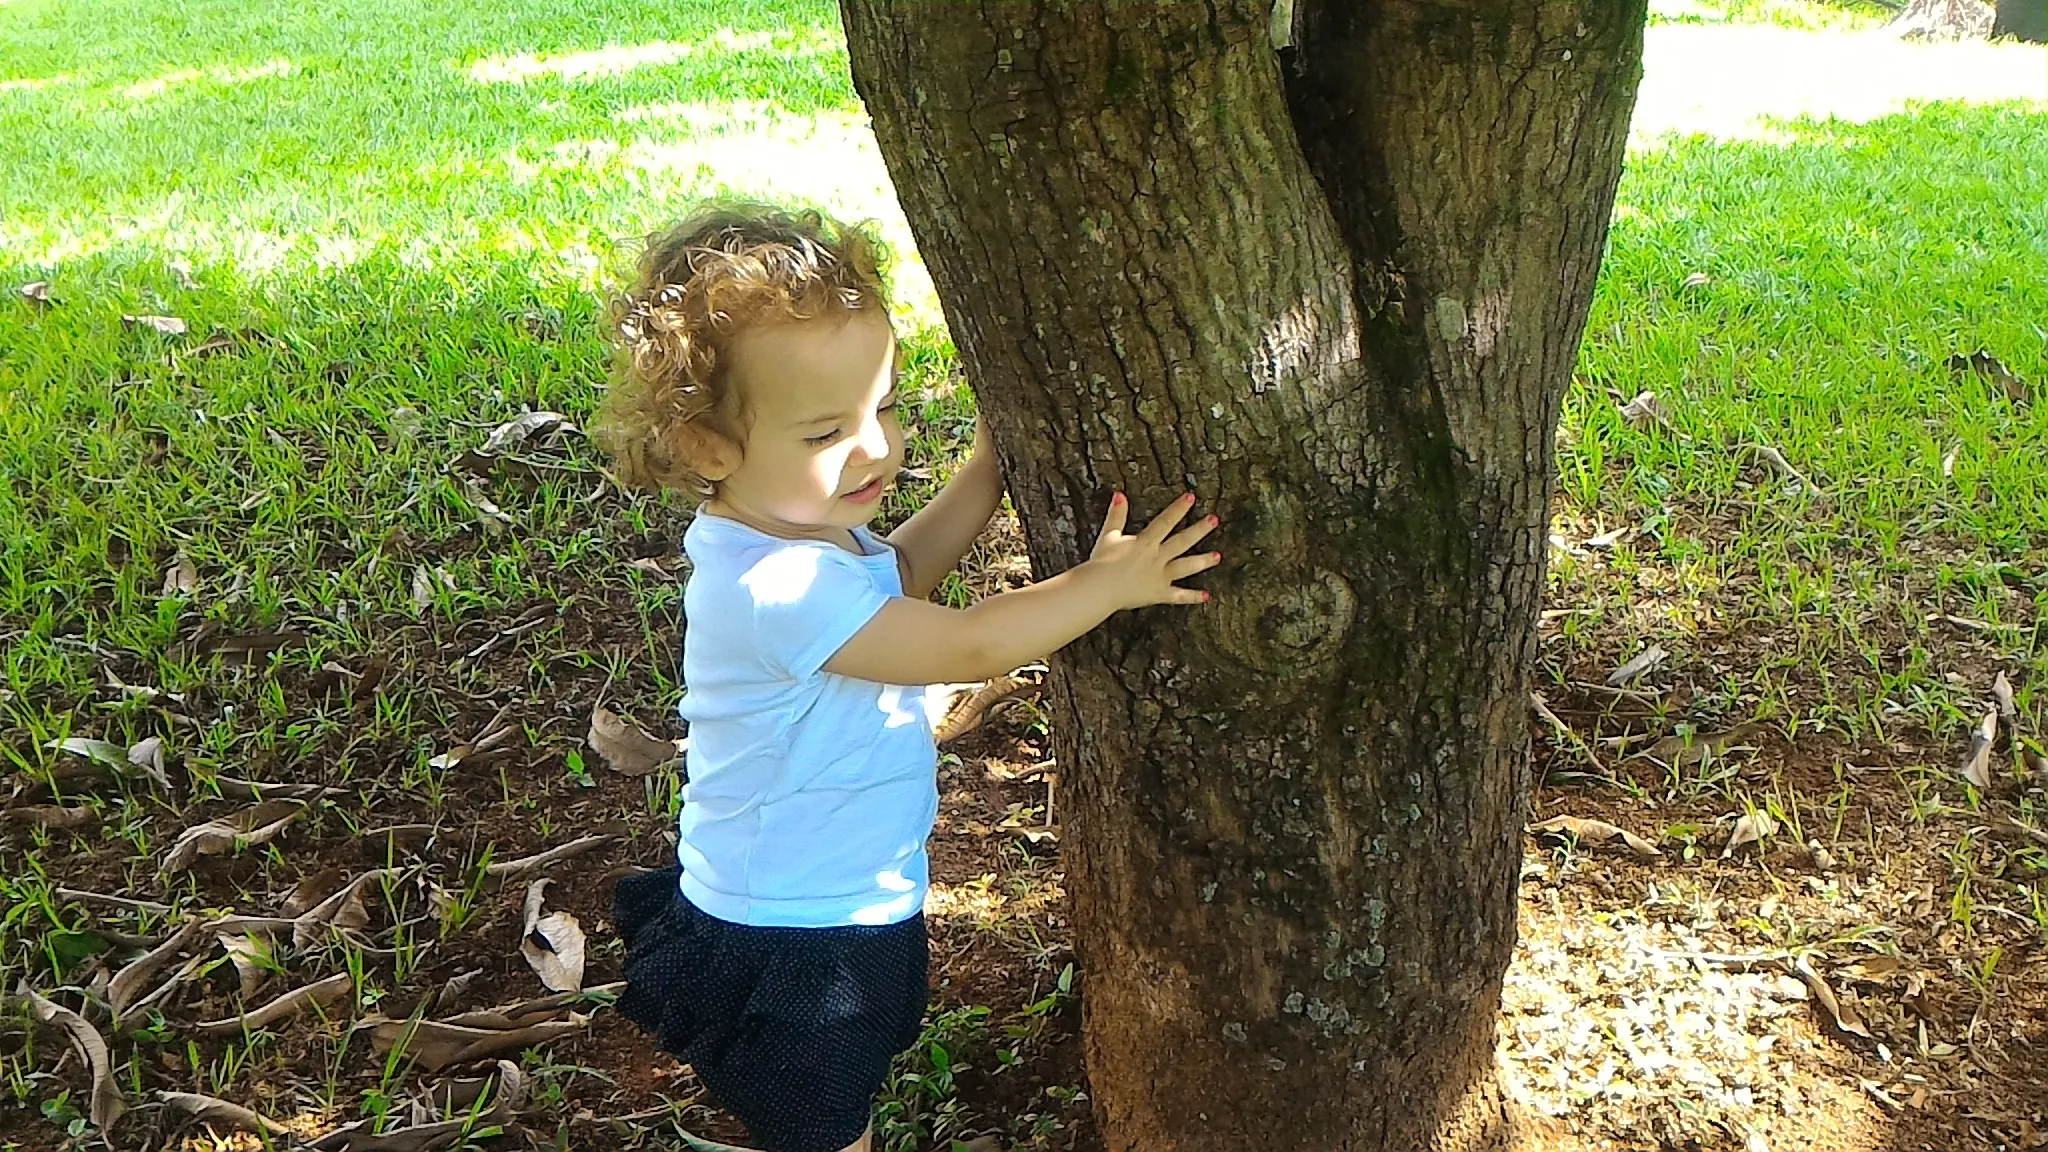 Helena explorando o mundo, ao lado de um árvore